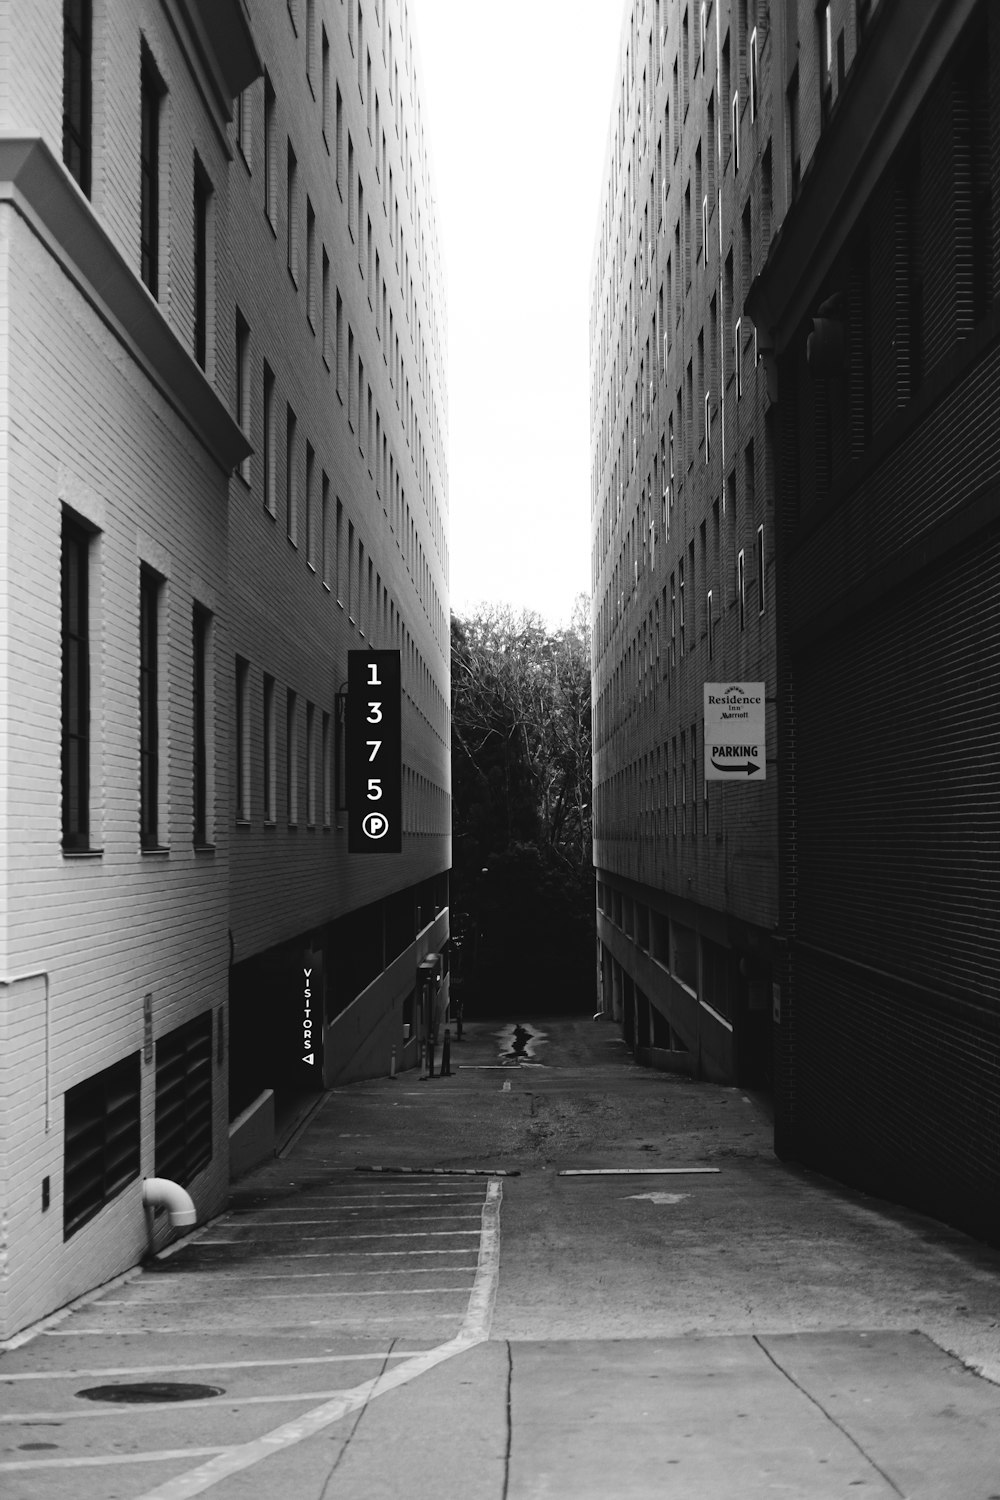 Photo en niveaux de gris d’un chemin entre un bâtiment en béton